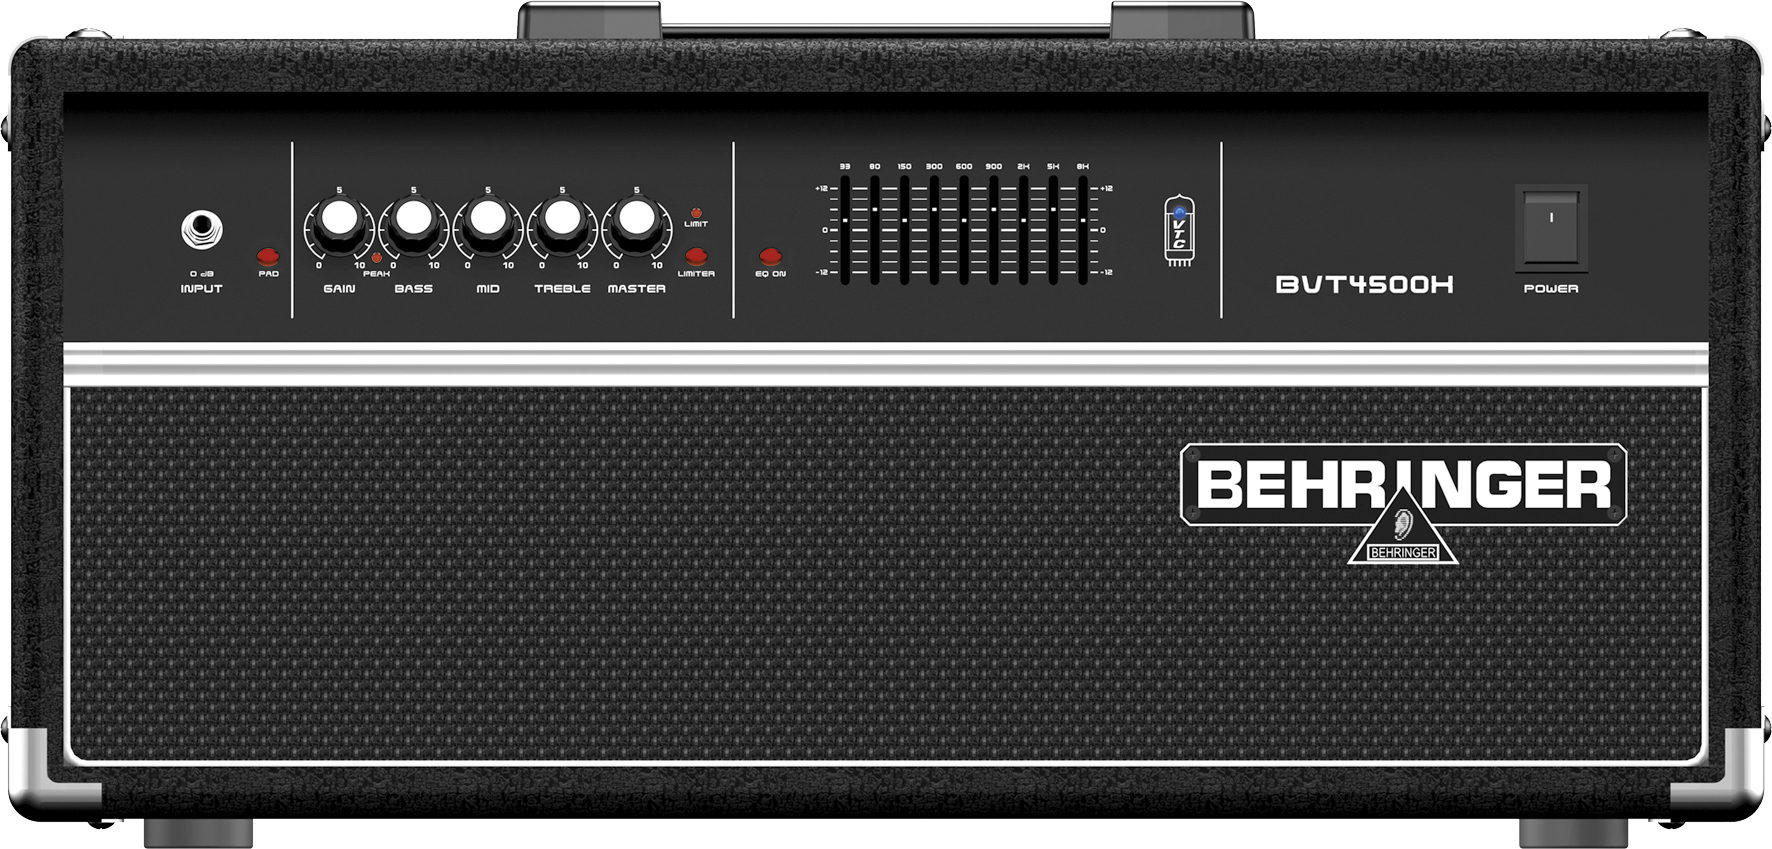 Behringer Behringer Ultrabass BVT4500H Bass Amplifier Head, 450 Watts